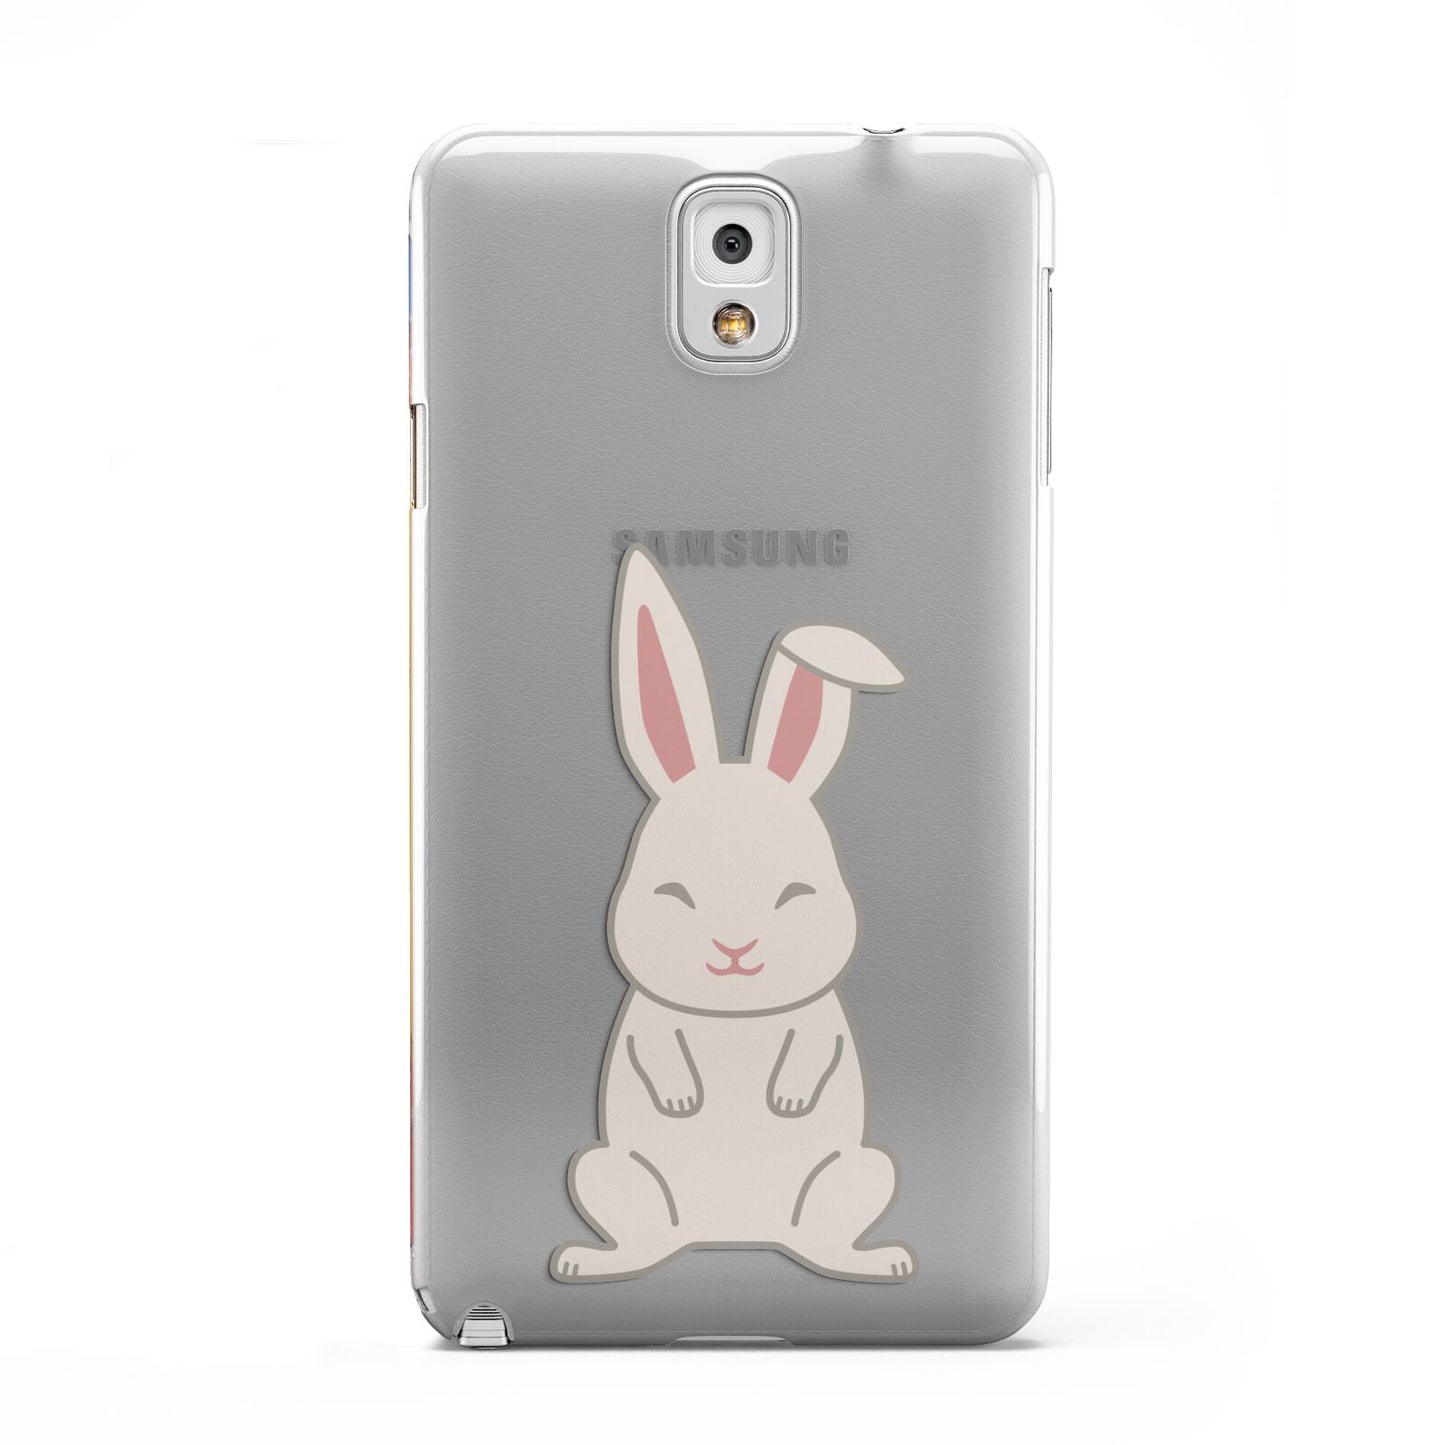 Bunny Samsung Galaxy Note 3 Case